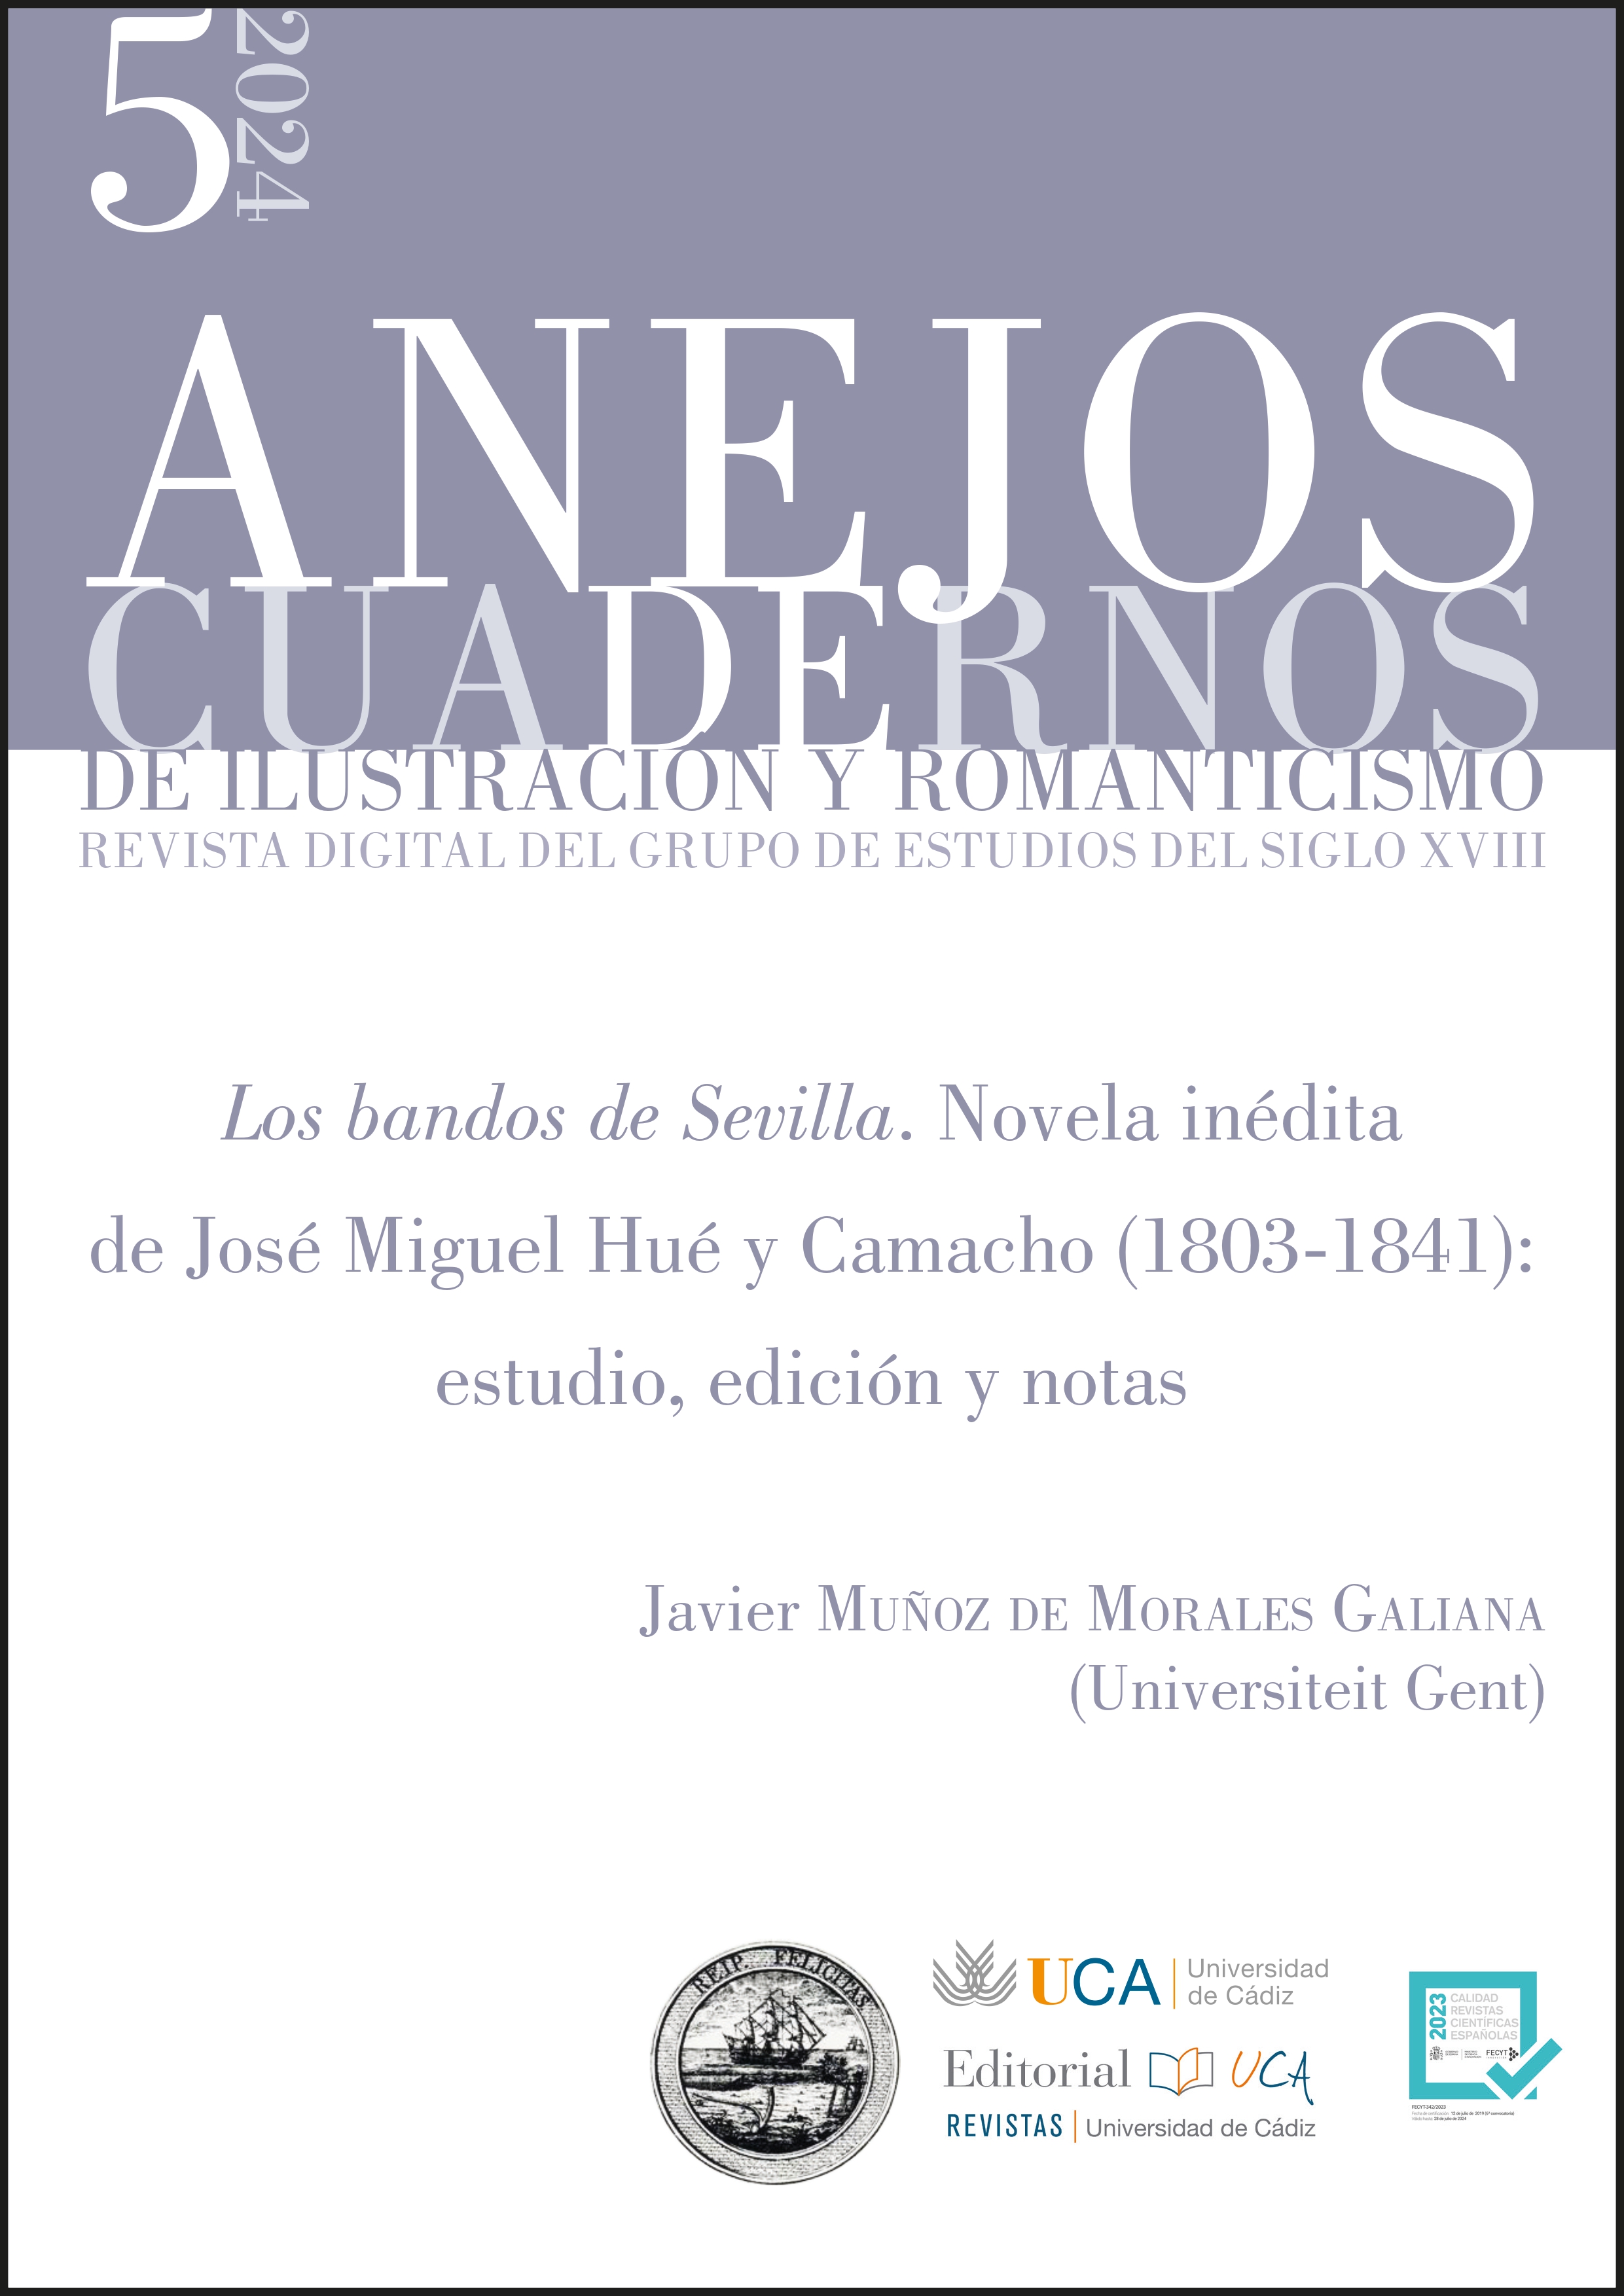 Los bandos de Sevilla. Unpublished novel by José Miguel Hué y Camacho (1803-1841): study, edition, and notes